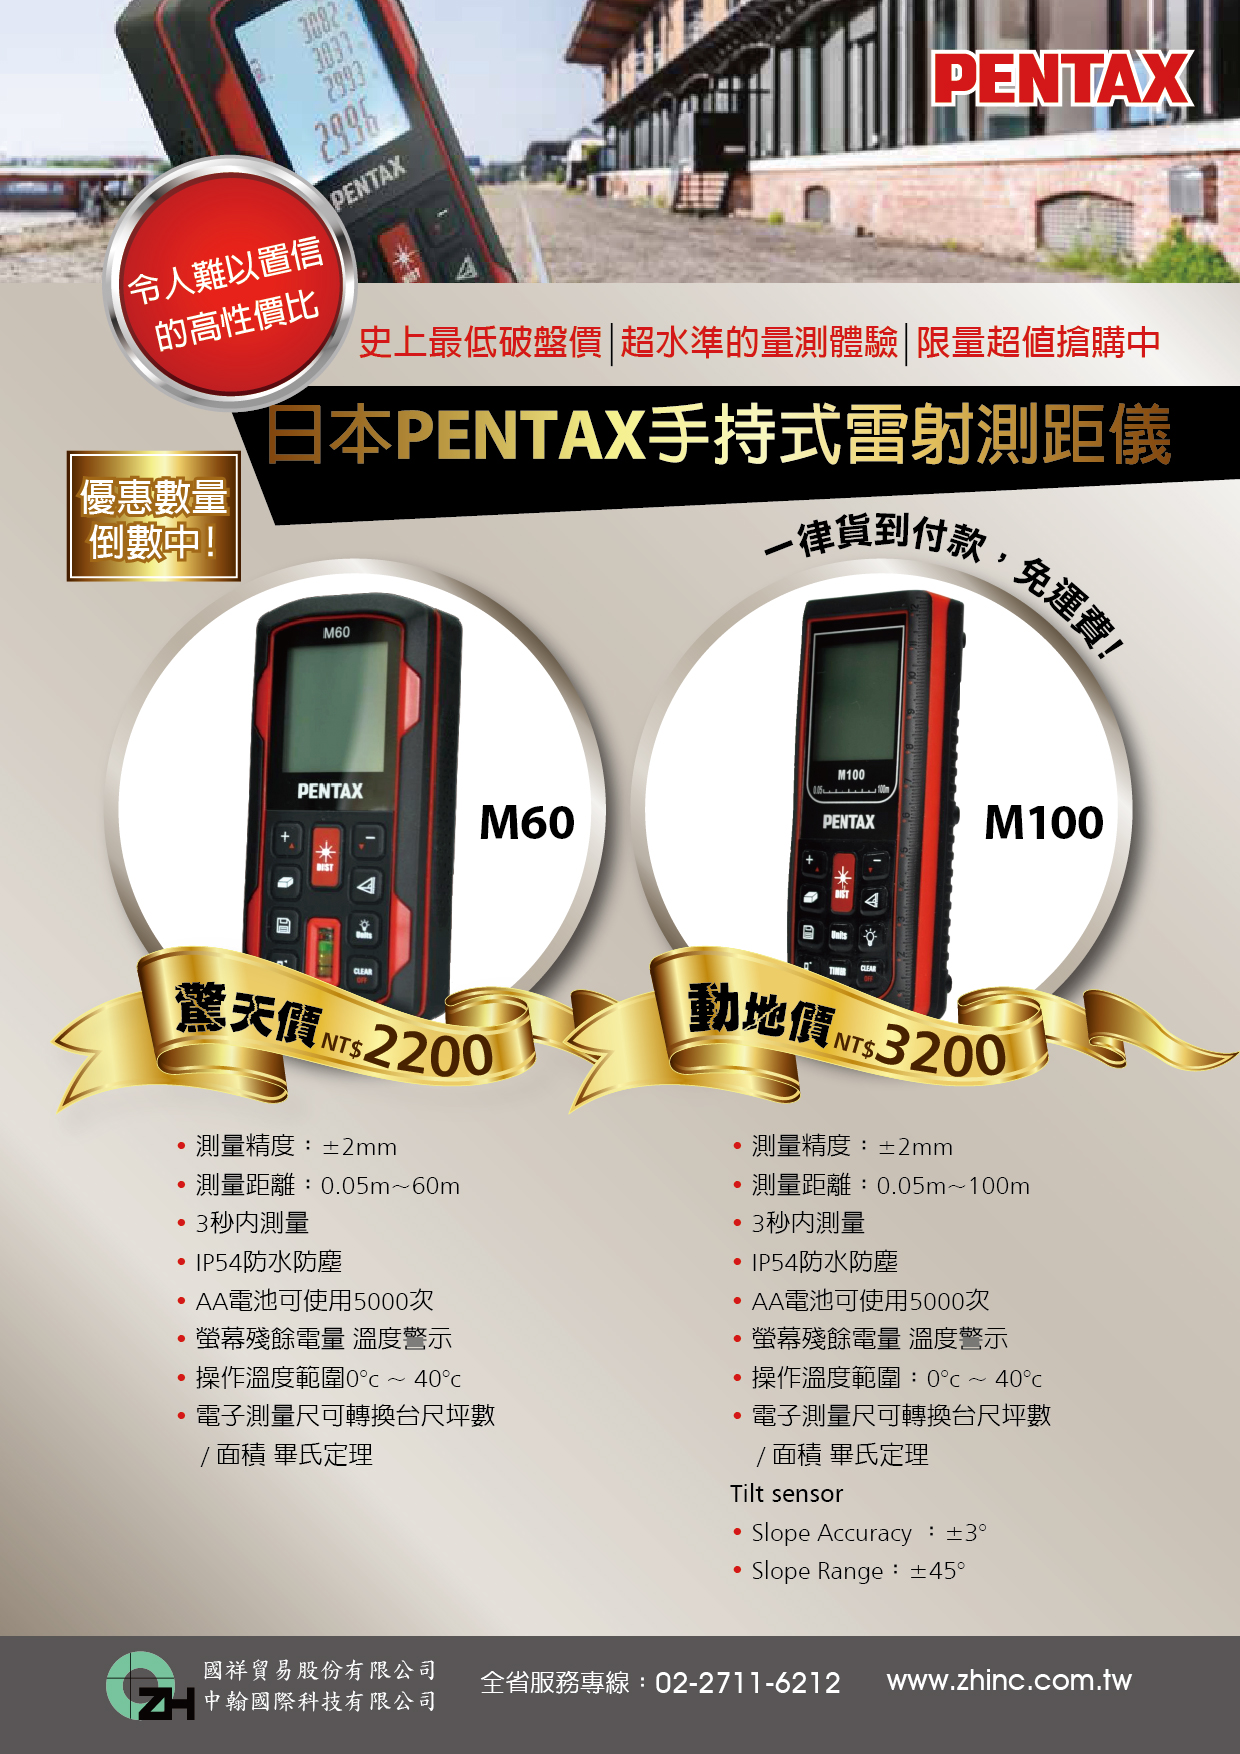 【最後倒數!】日本PENTAX手持式雷射測距儀限量特價即將售罄!!! 敬請把握最後機會